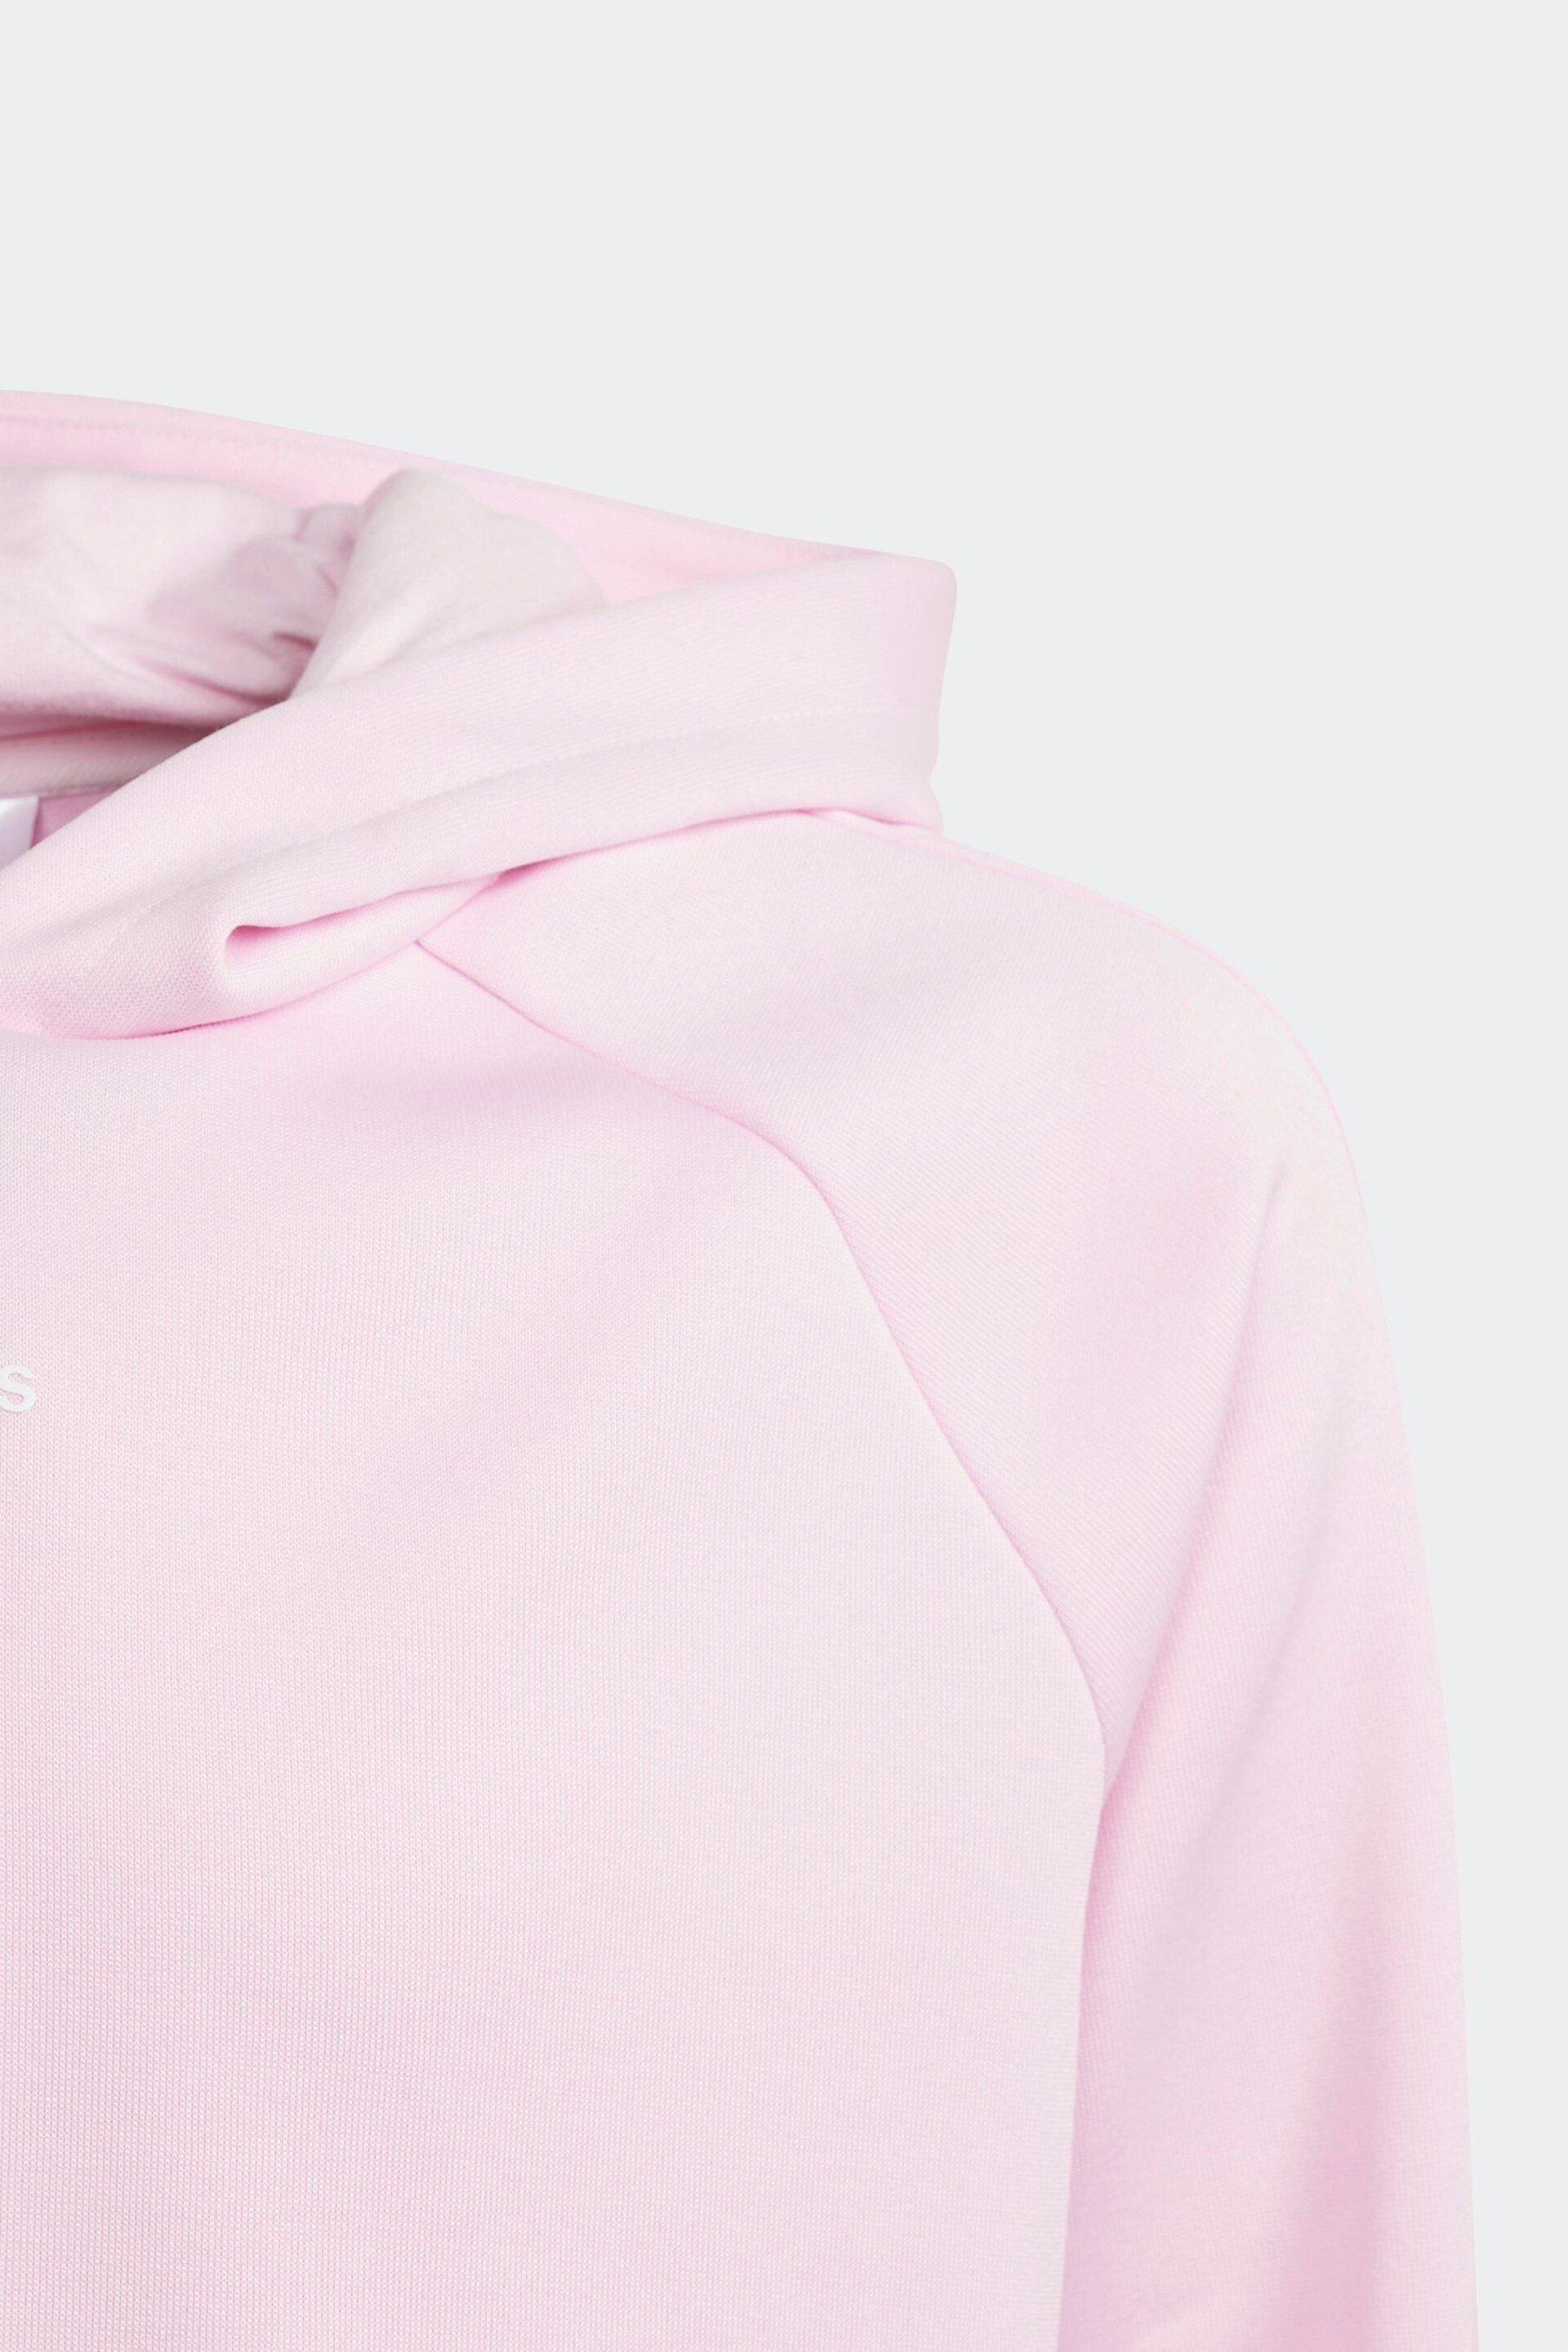 adidas Pink Hoodie - Image 5 of 5